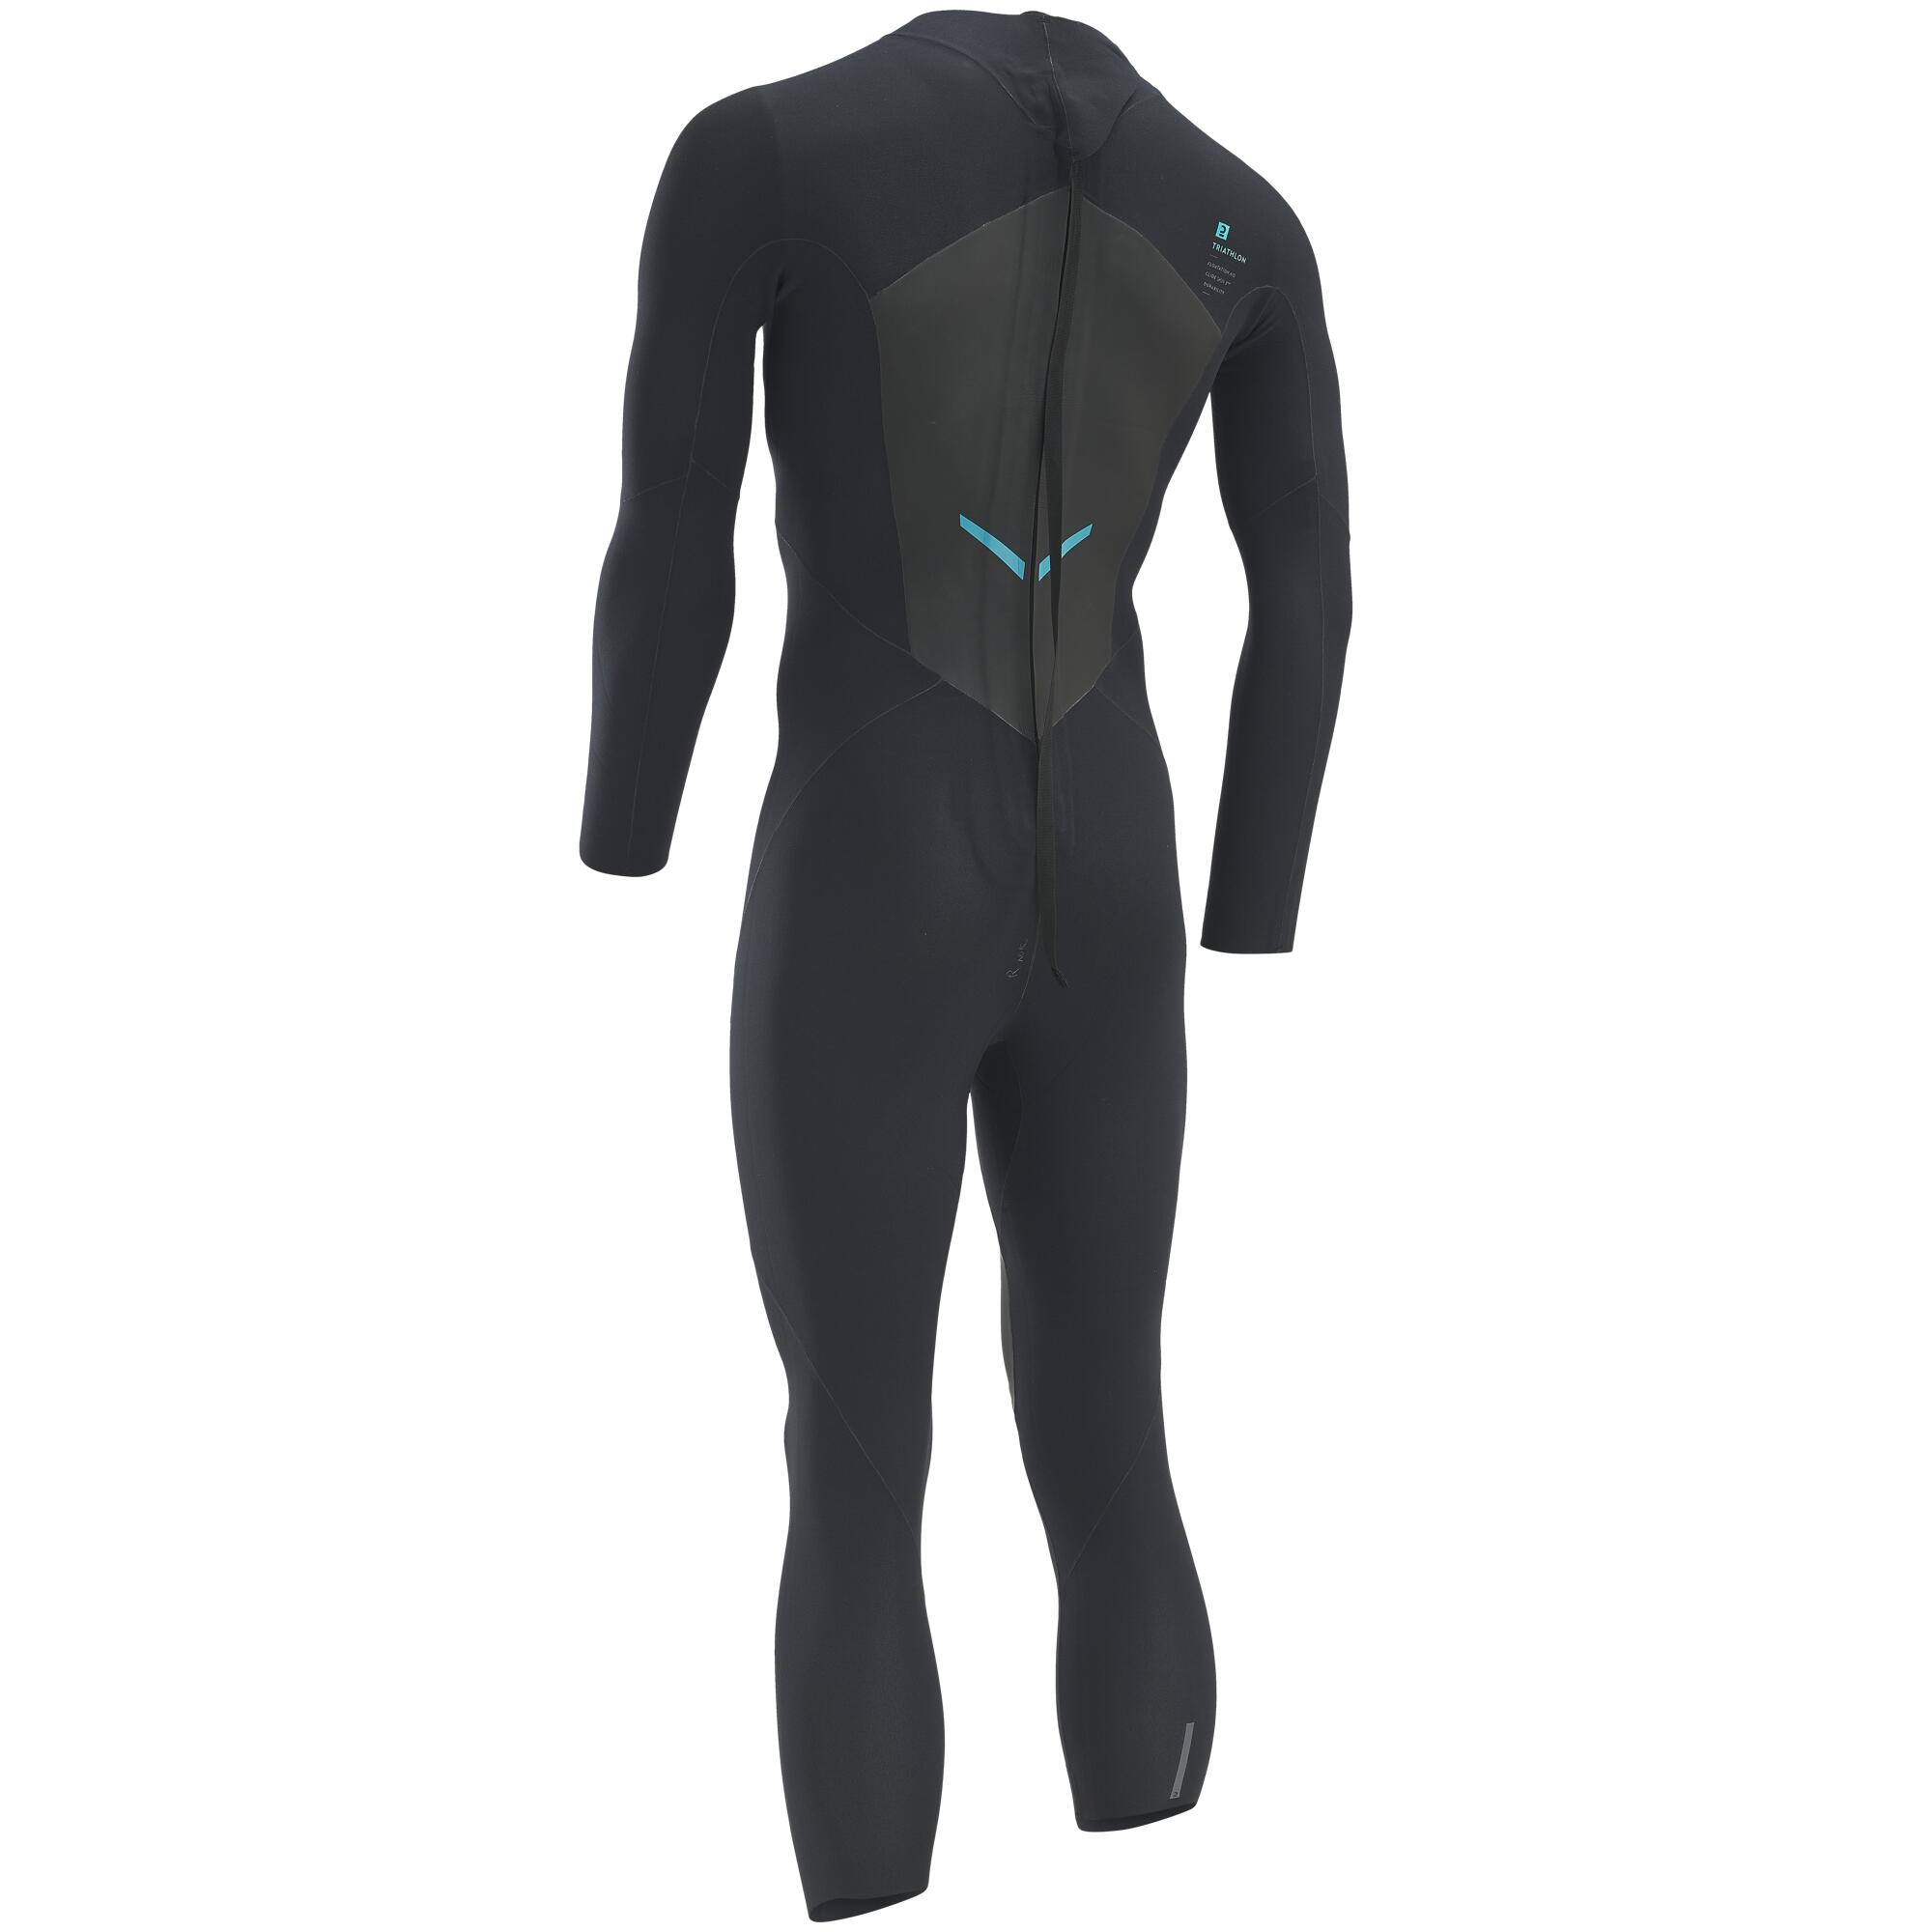 Triathlon neoprene suit - Men - Black, Whale grey - Van rysel - Decathlon